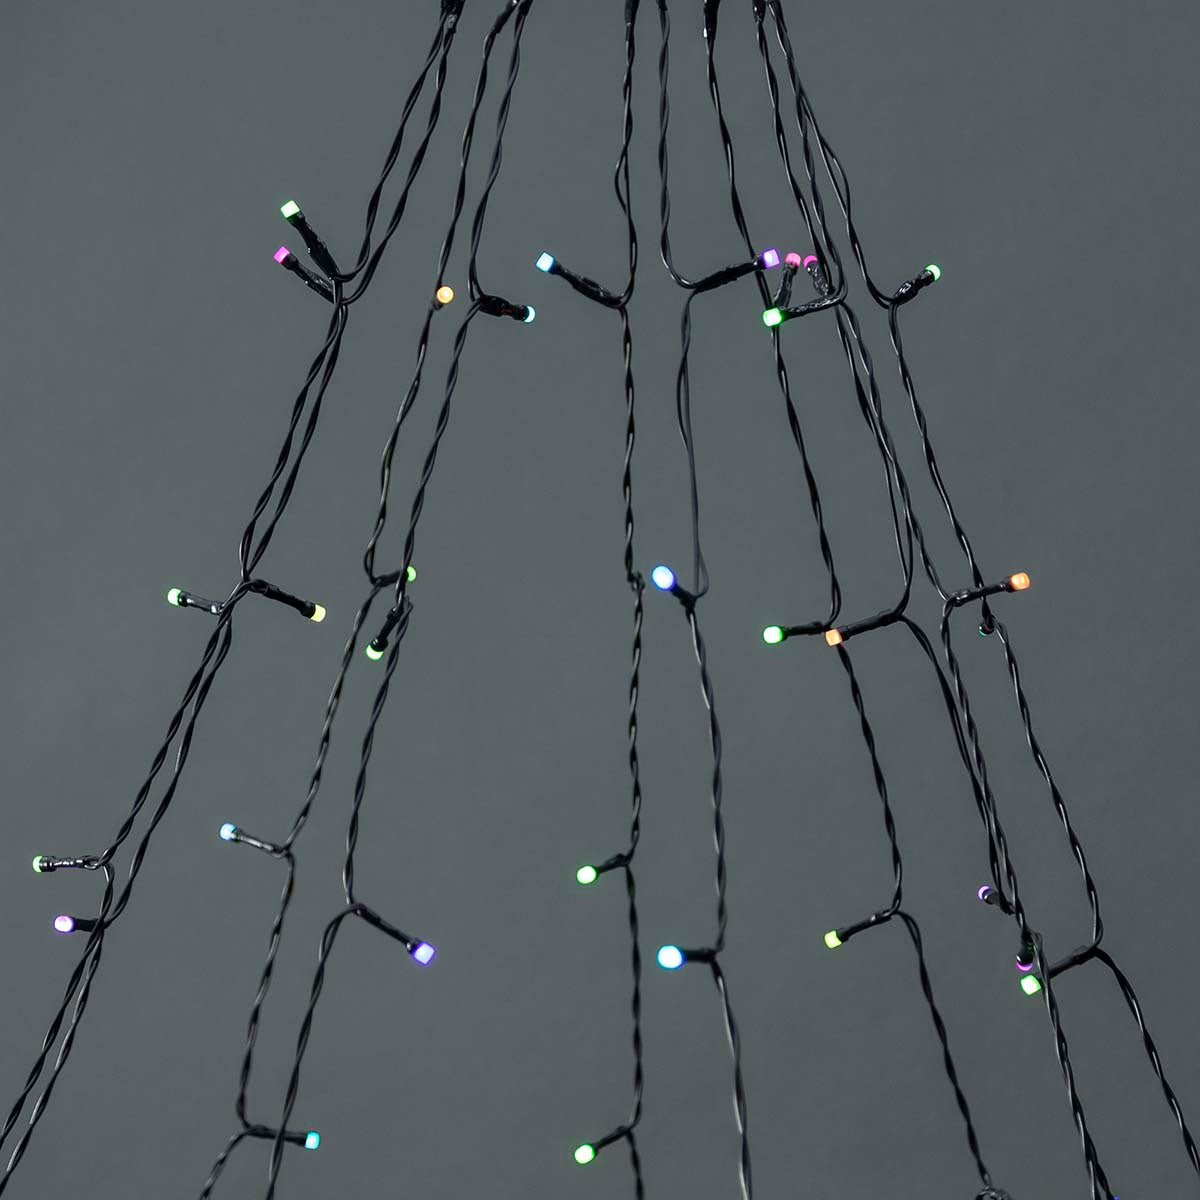 LED-Lichterkette Baum weiß 200 LEDs 10x2m jetzt kaufen - Aktionskönig